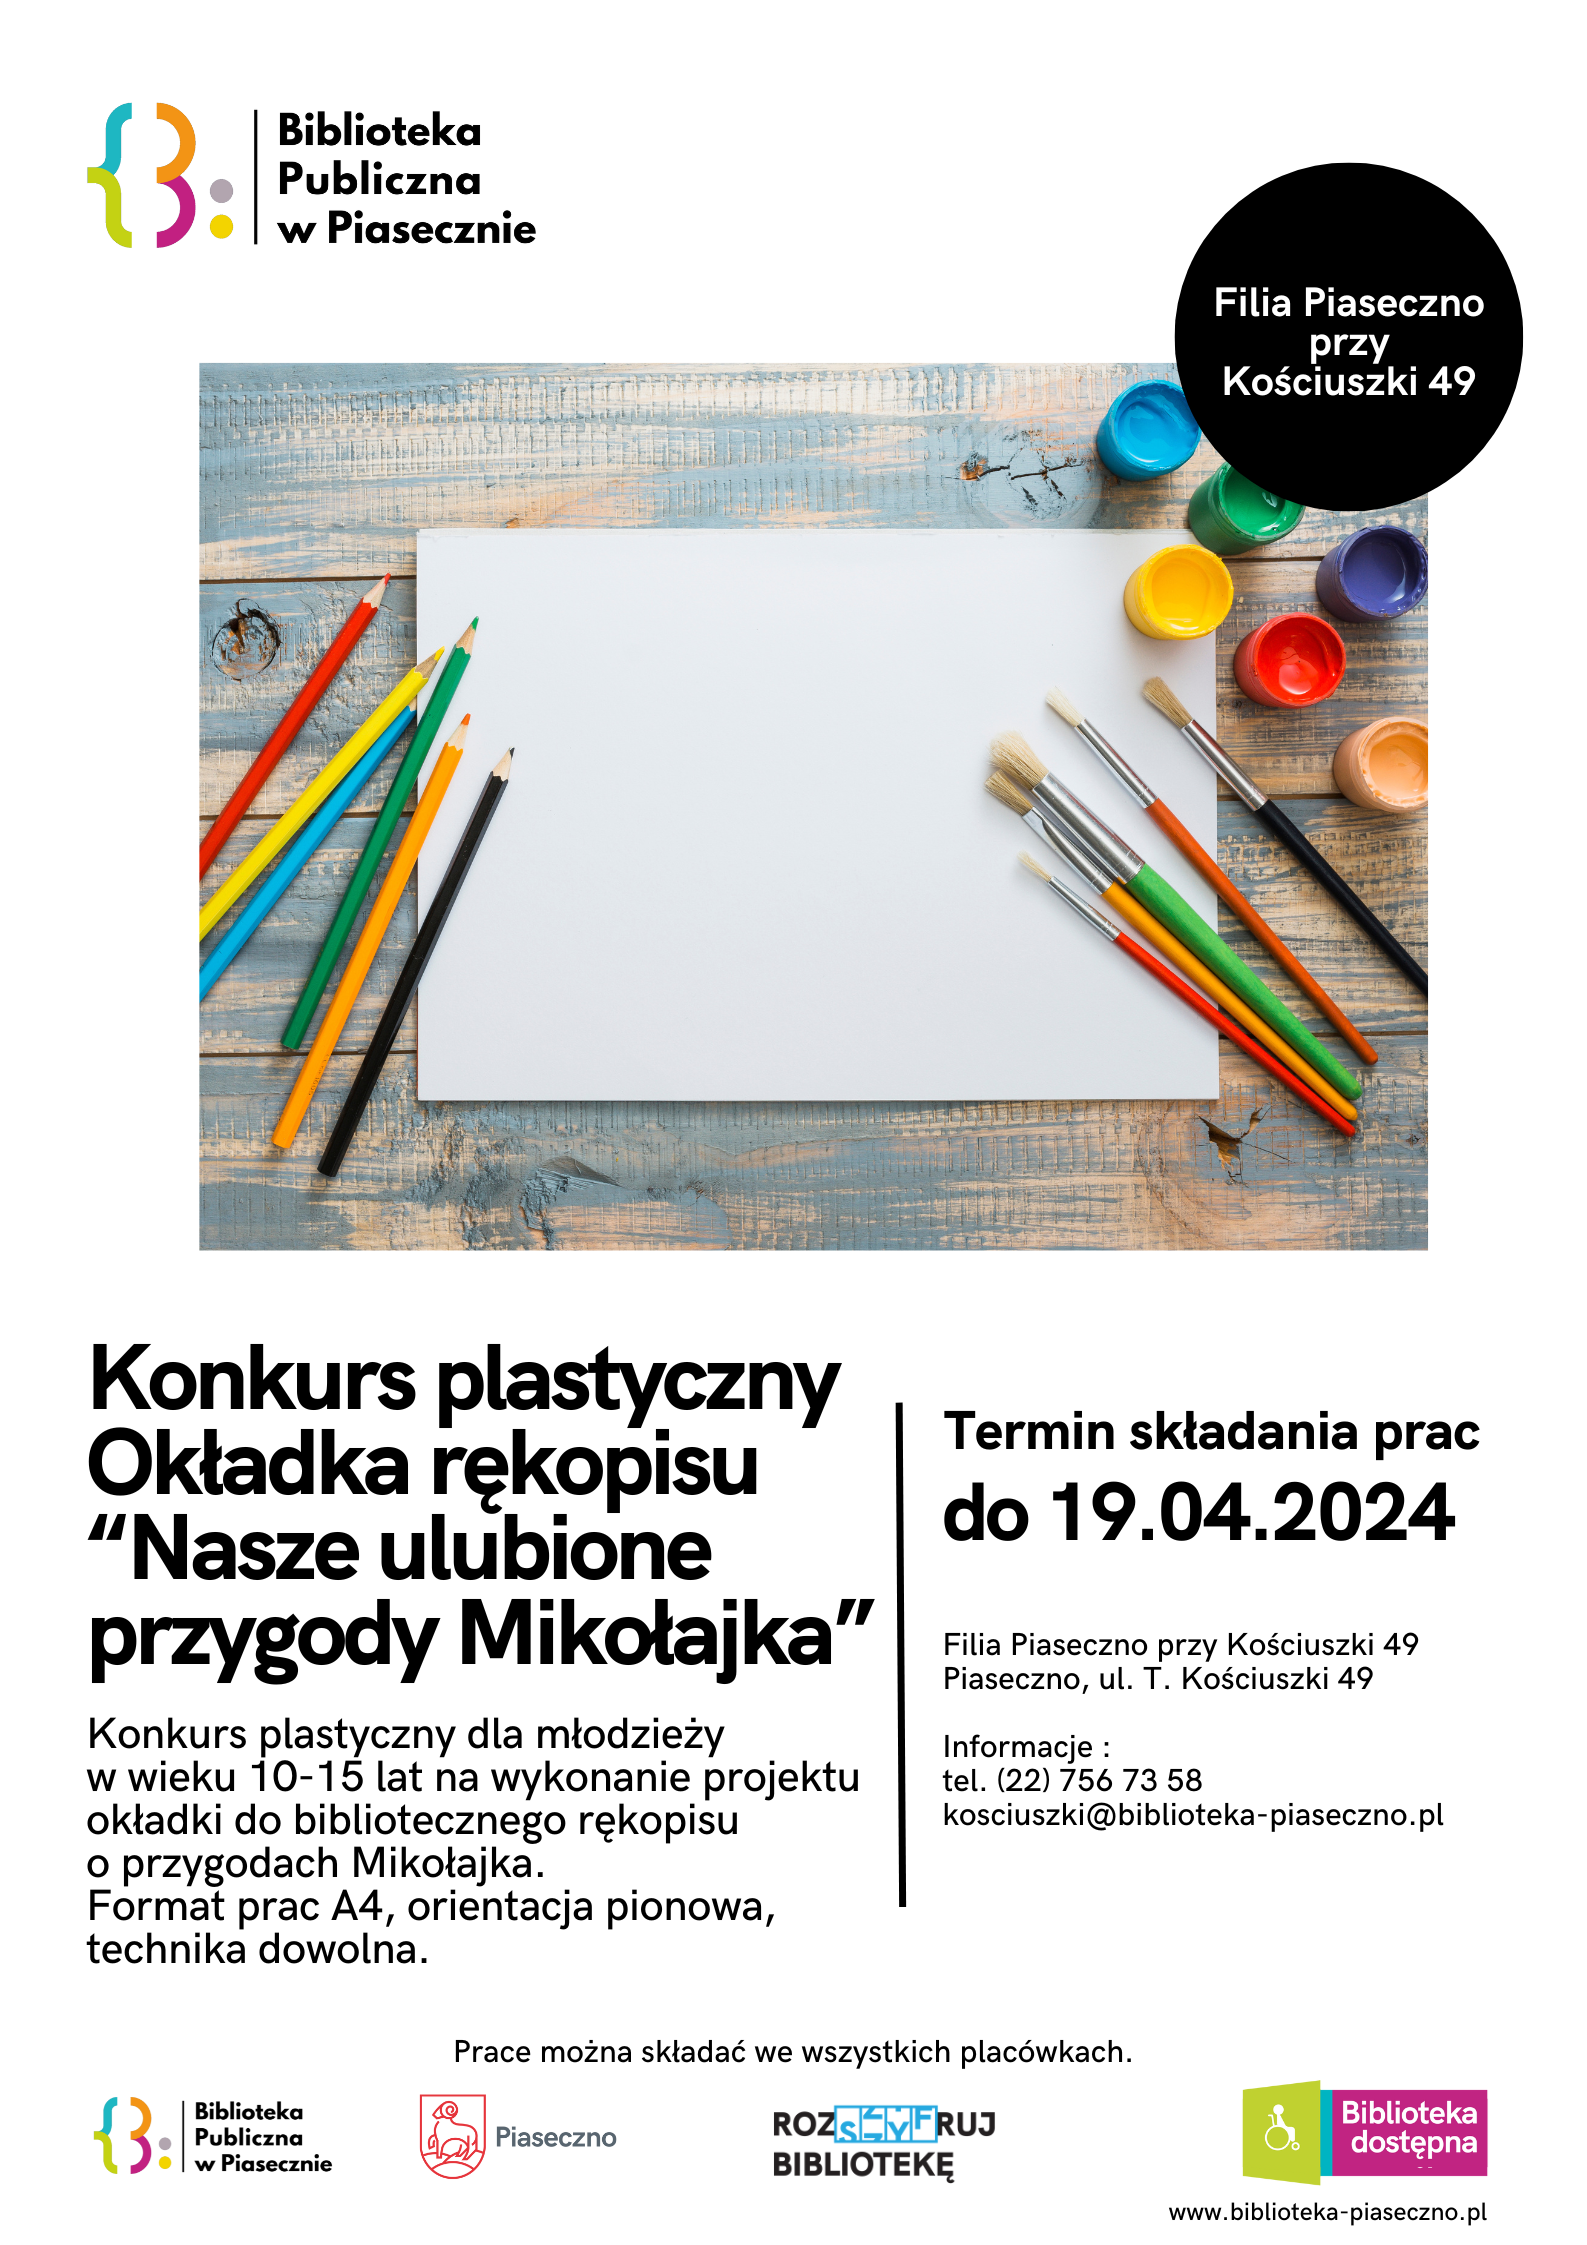 Plakat promujący konkurs plastyczny na okładkę bibliotecznego rękopisu Nasze ulubione przygody Mikołajka